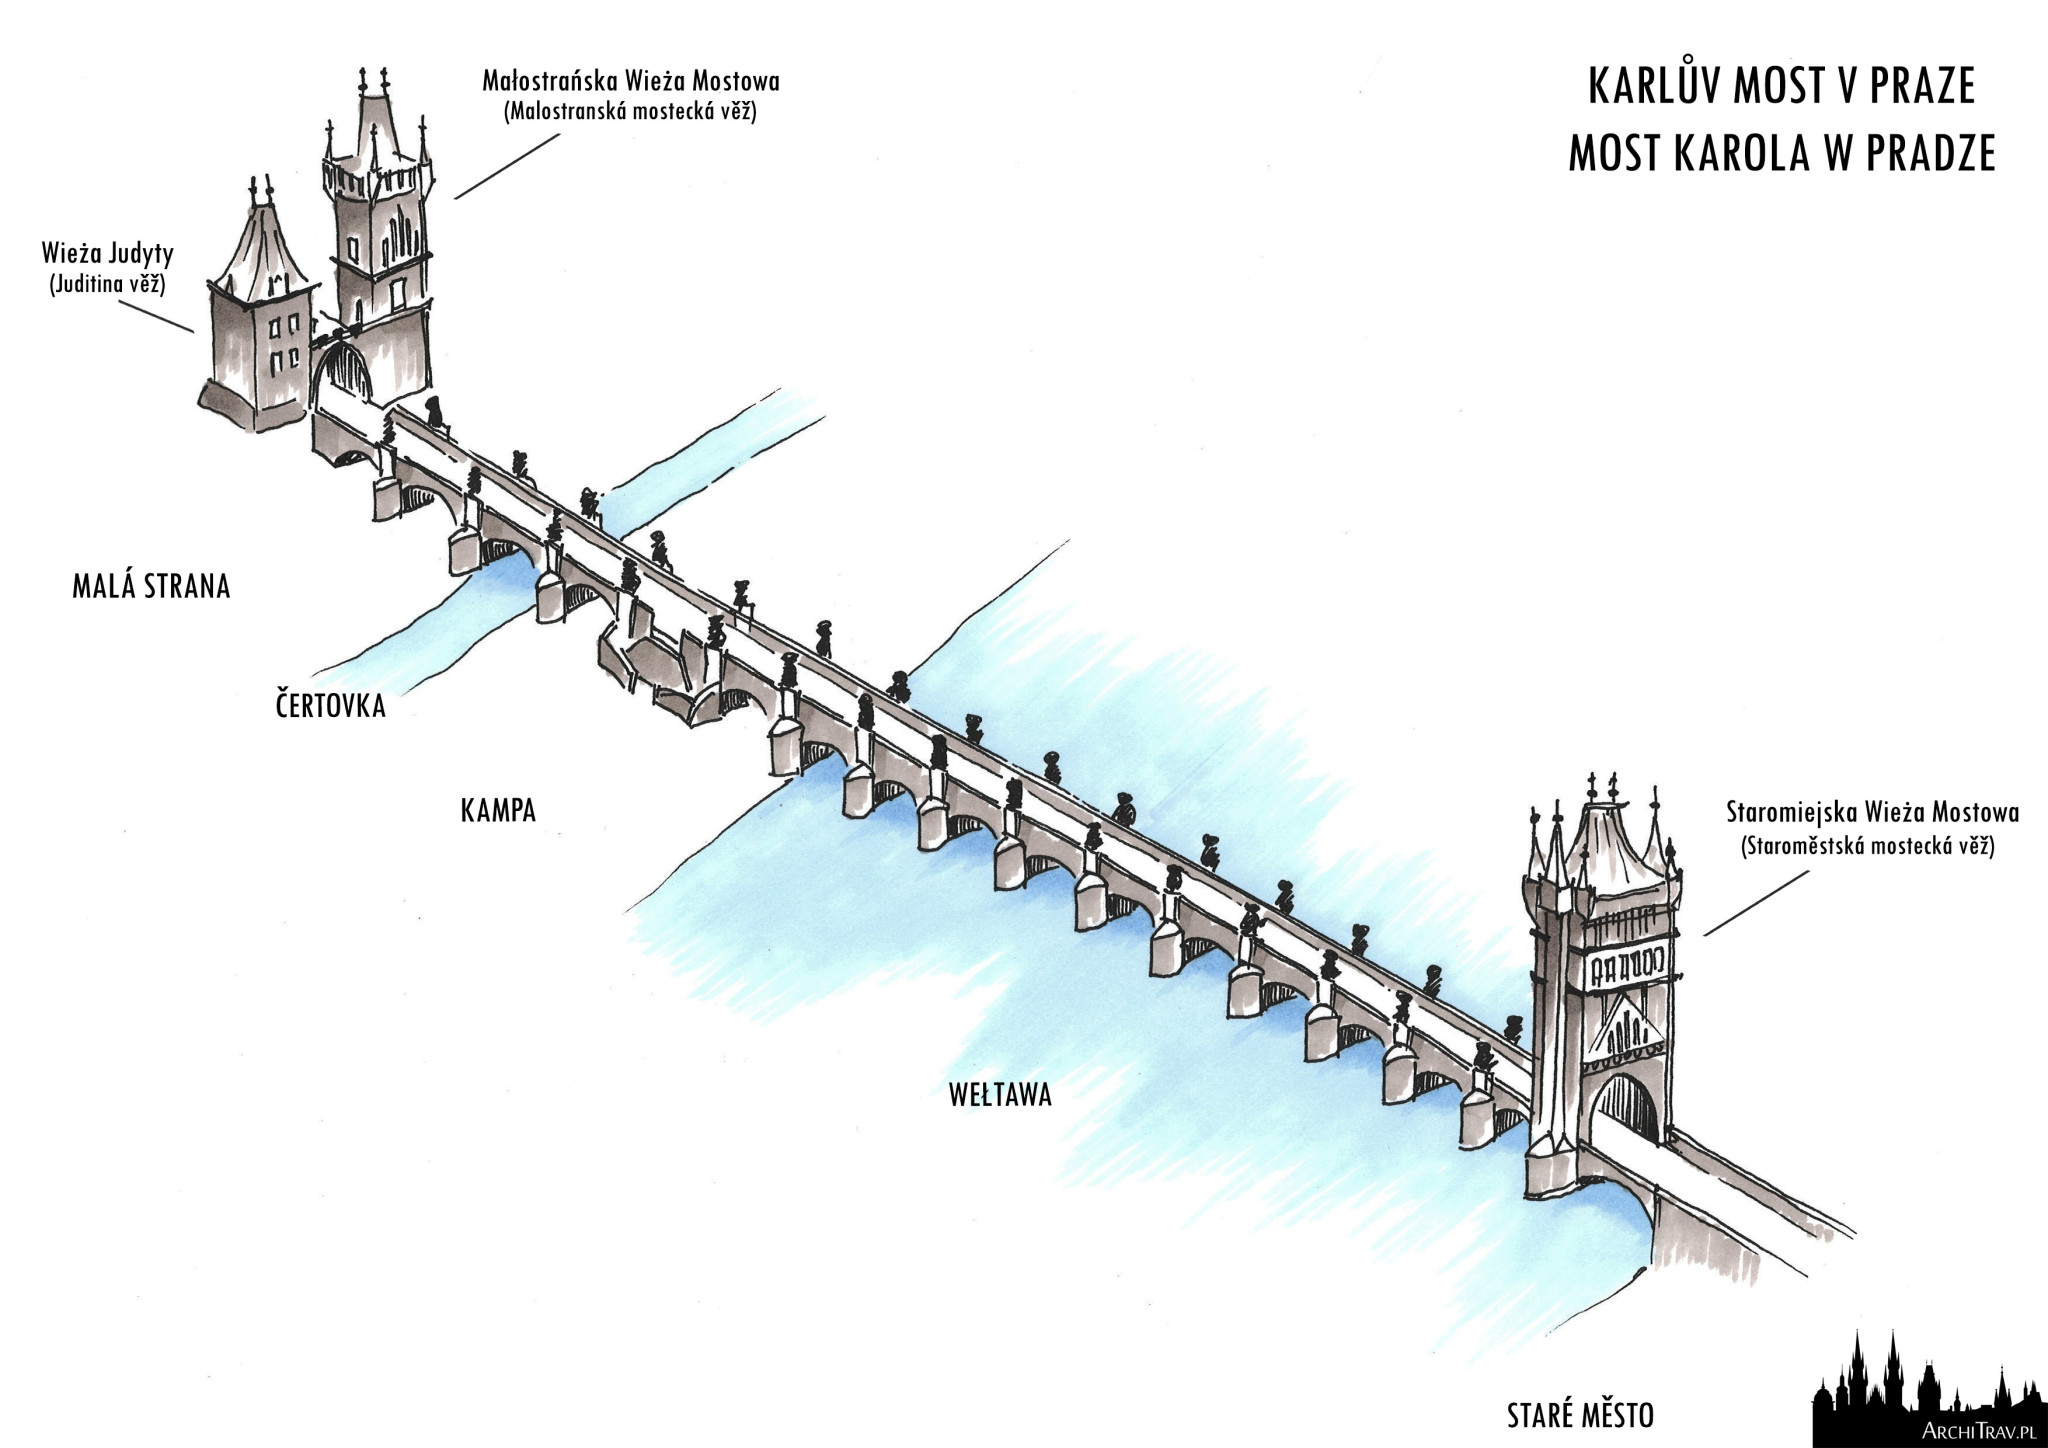 rysunek odręczny widoku z góry Mostu Karola z opisany elementami mostu